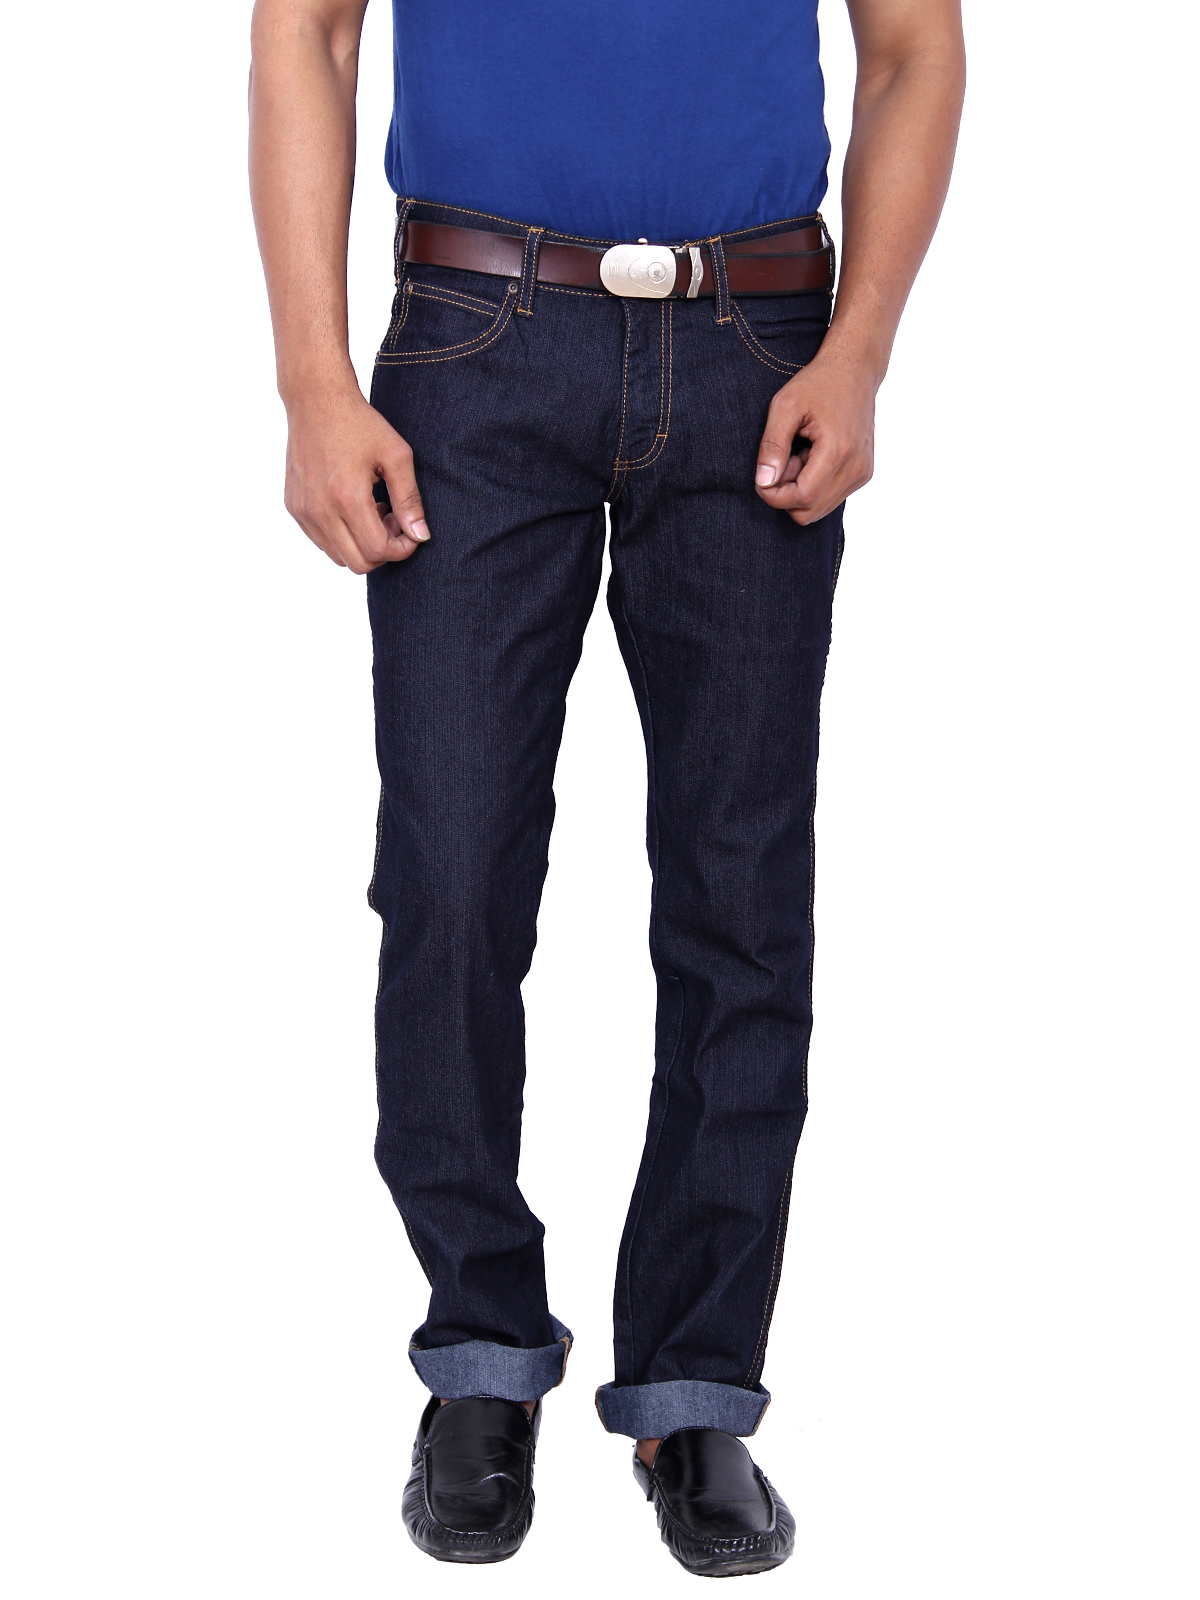 Buy Wrangler Black Rockville Regular Fit Jeans For Men Online @ ₹1375 ...